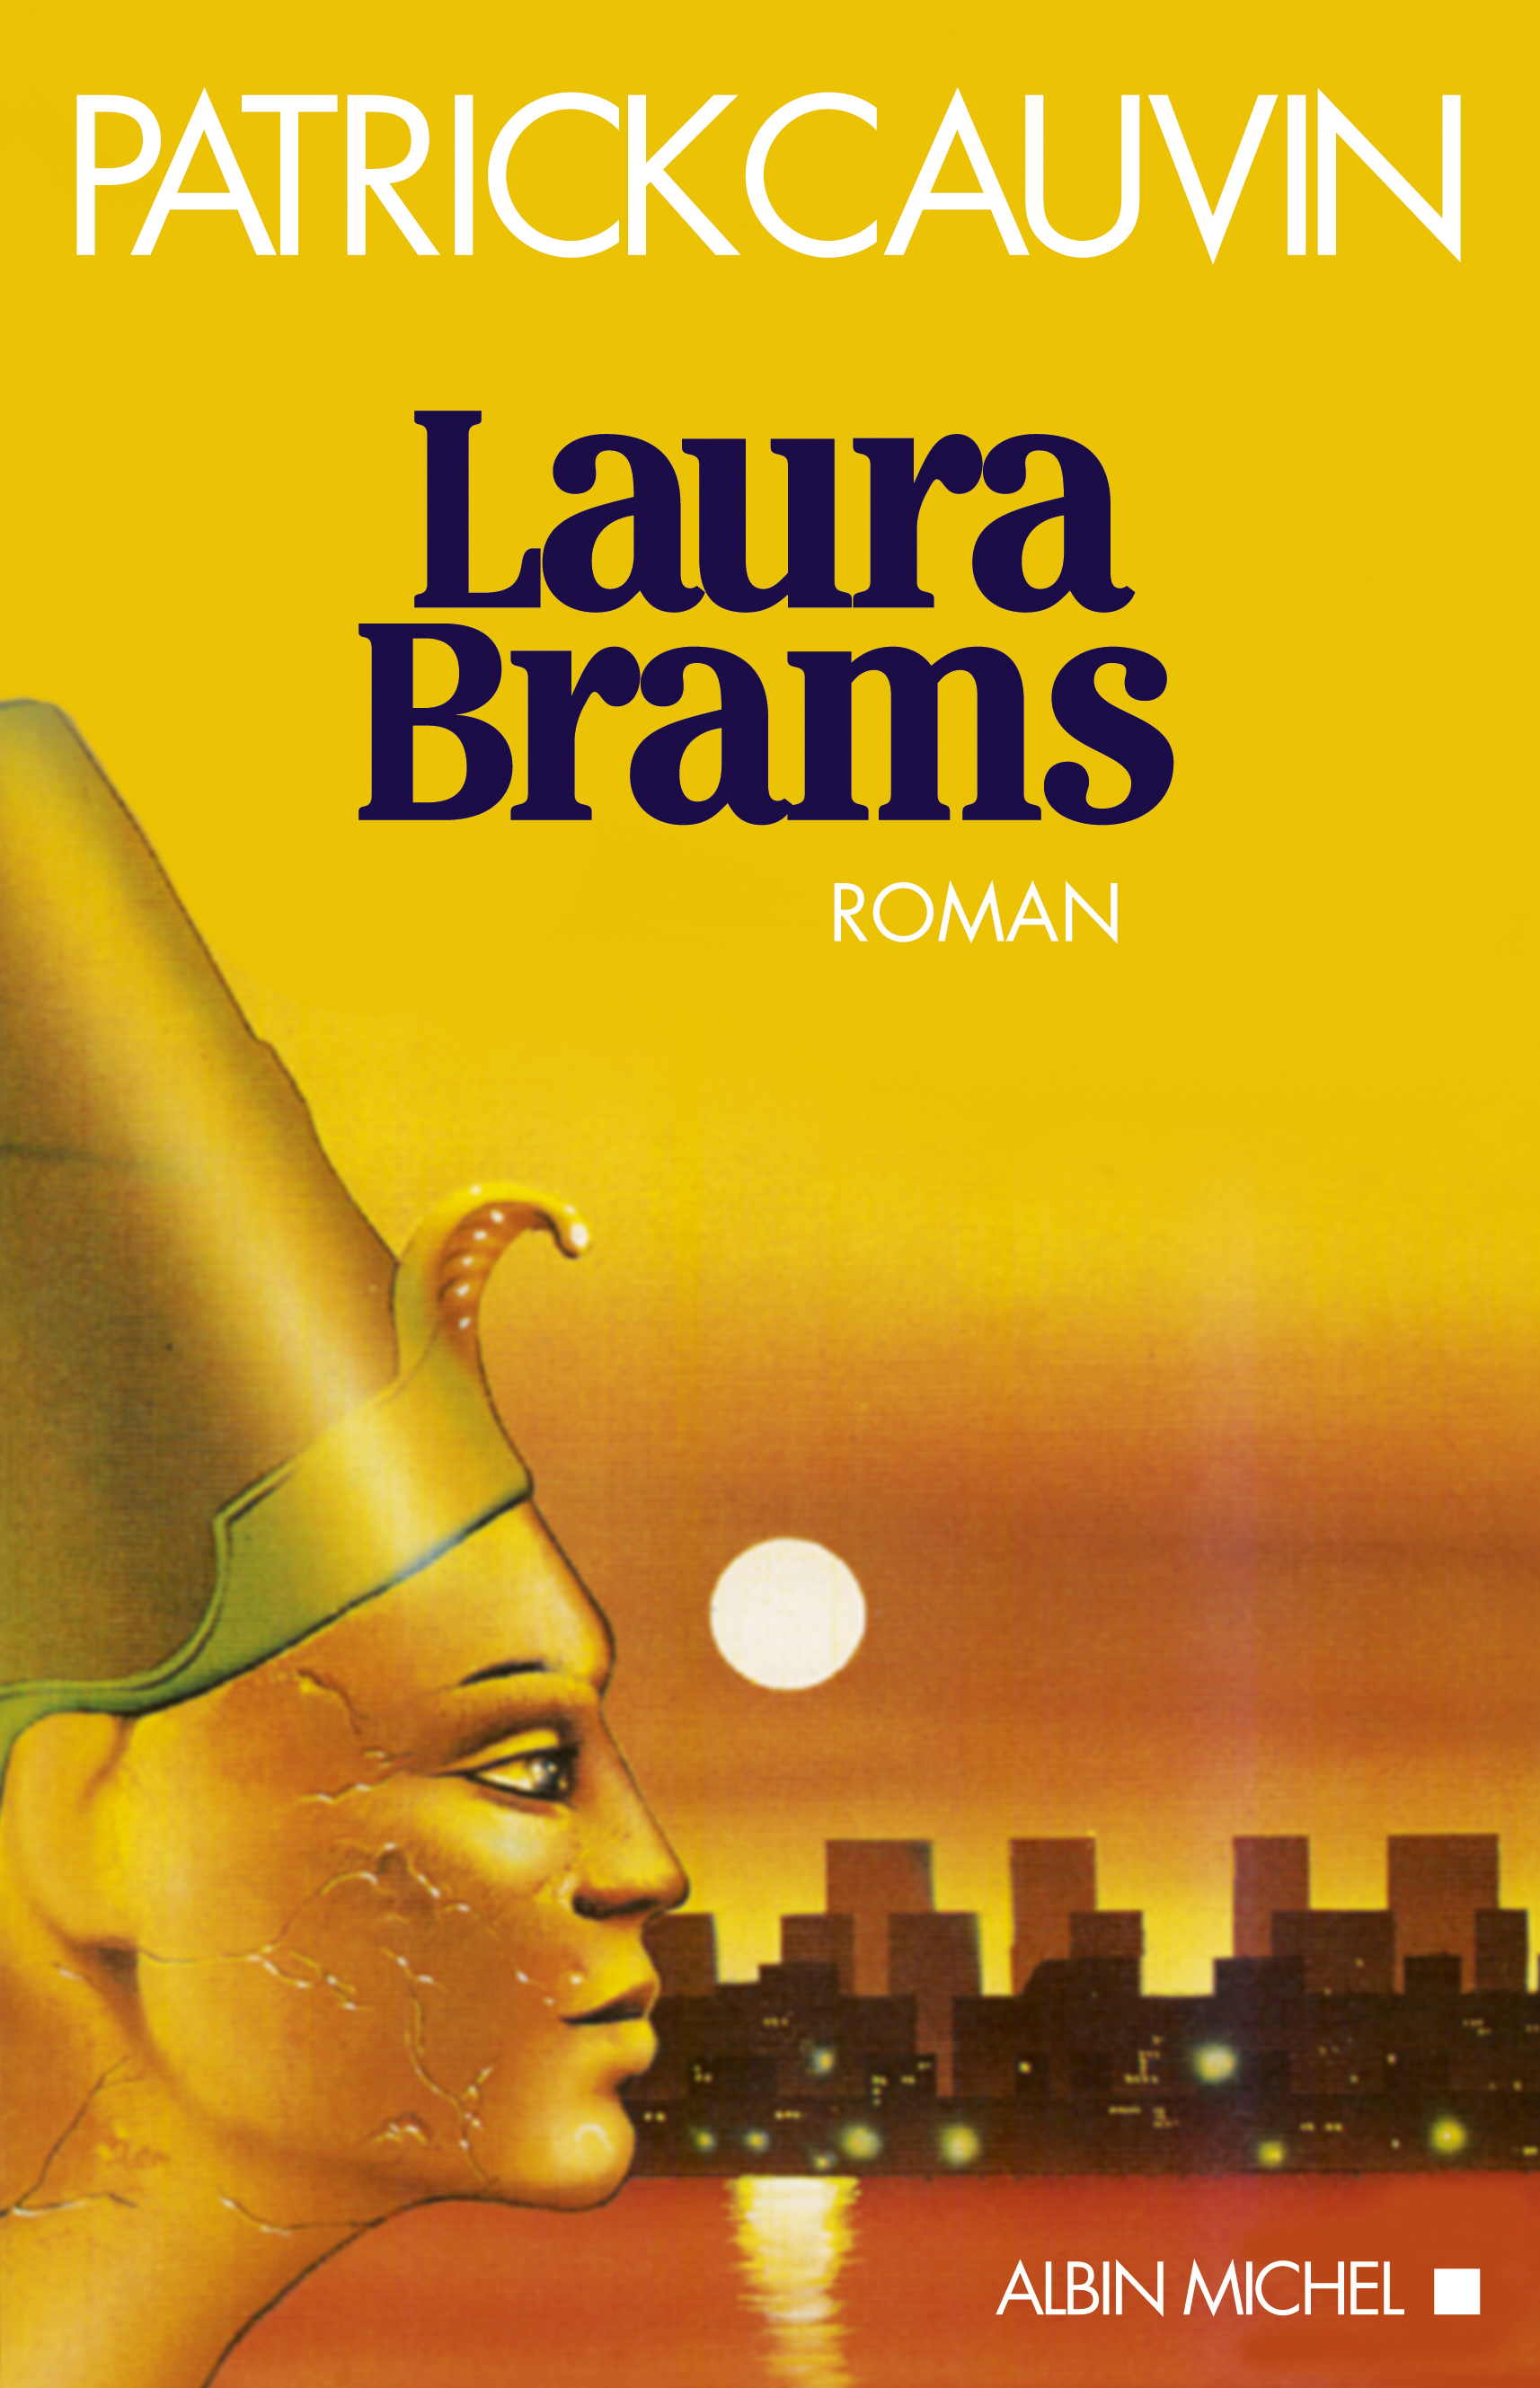 Couverture du livre Laura Brams